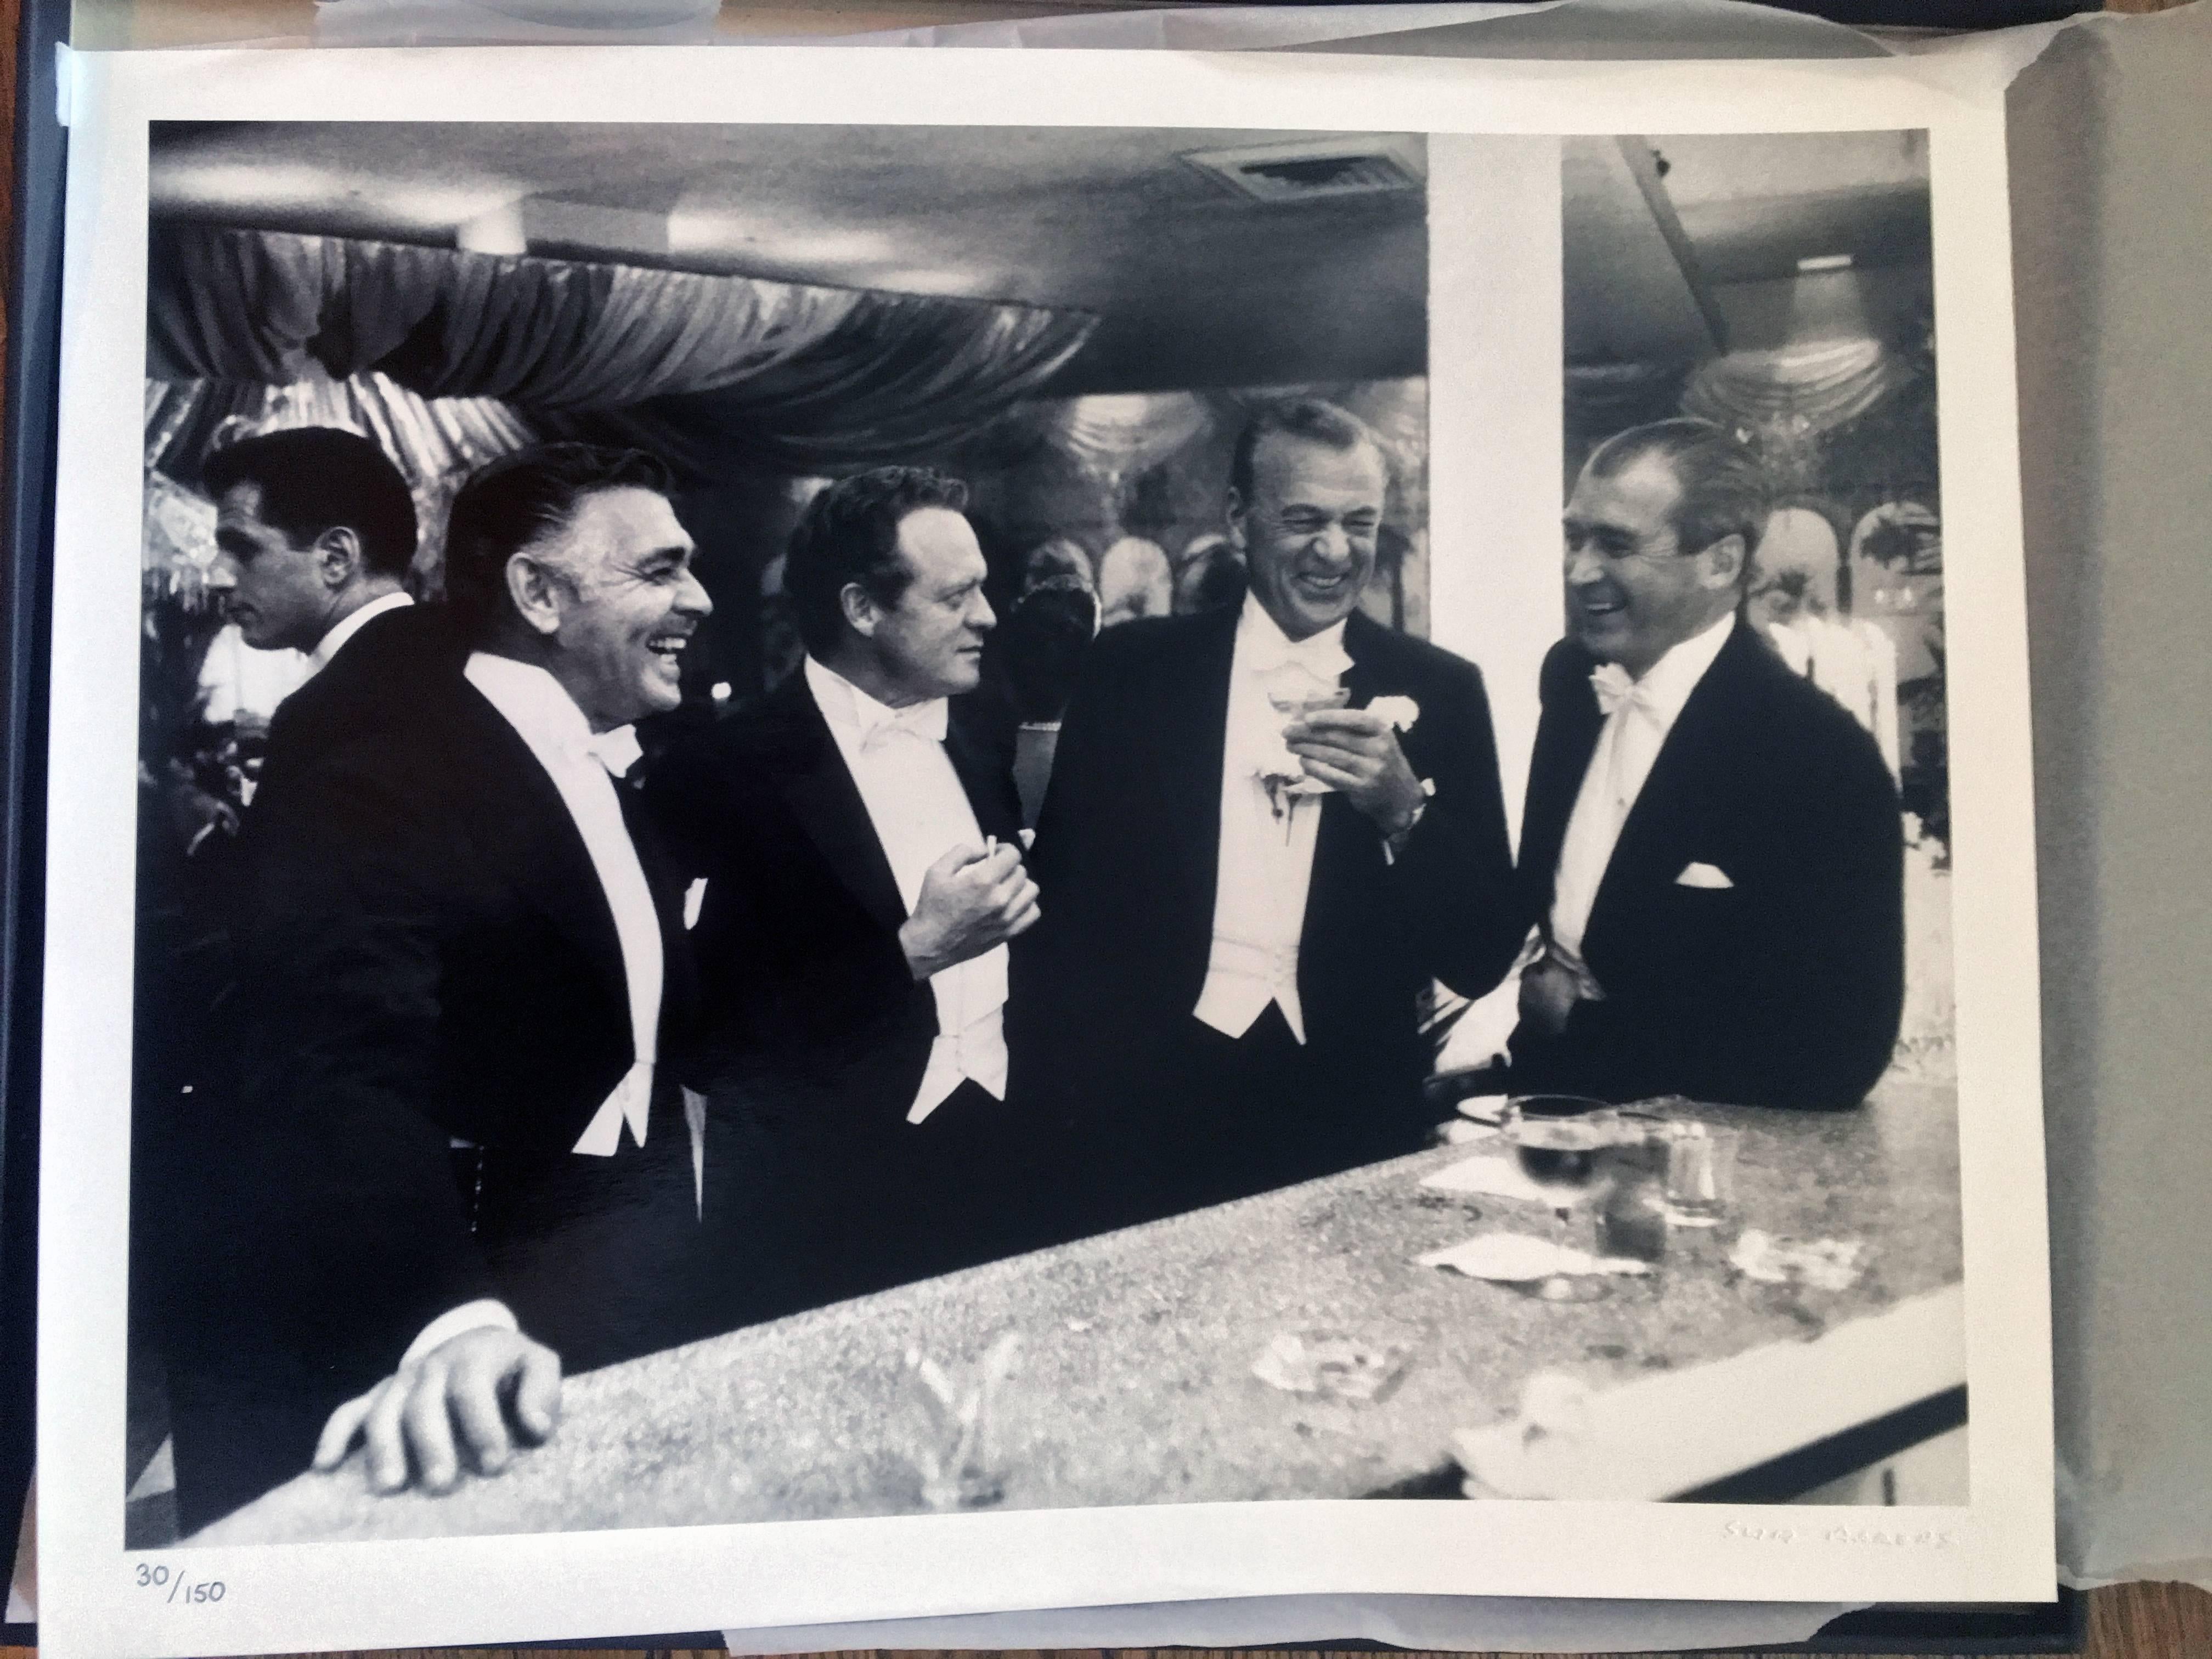 Kings of Hollywood (Clark Gable, Gary Cooper, James Stewart, Van Heflin - Photograph by Slim Aarons